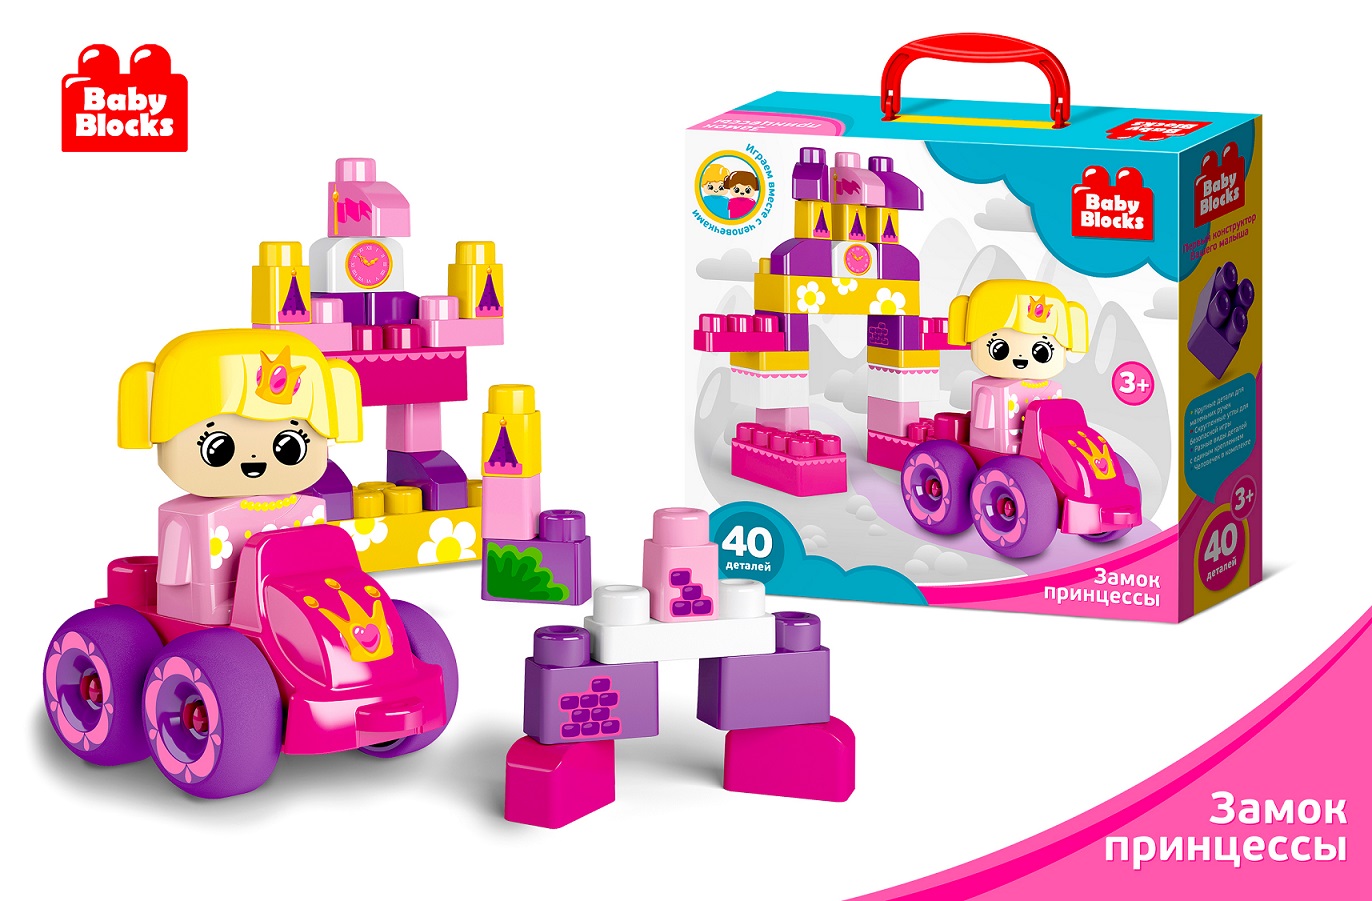 Конструктор пластиковый из серии Baby Blocks - Замок принцессы, 40 деталей  